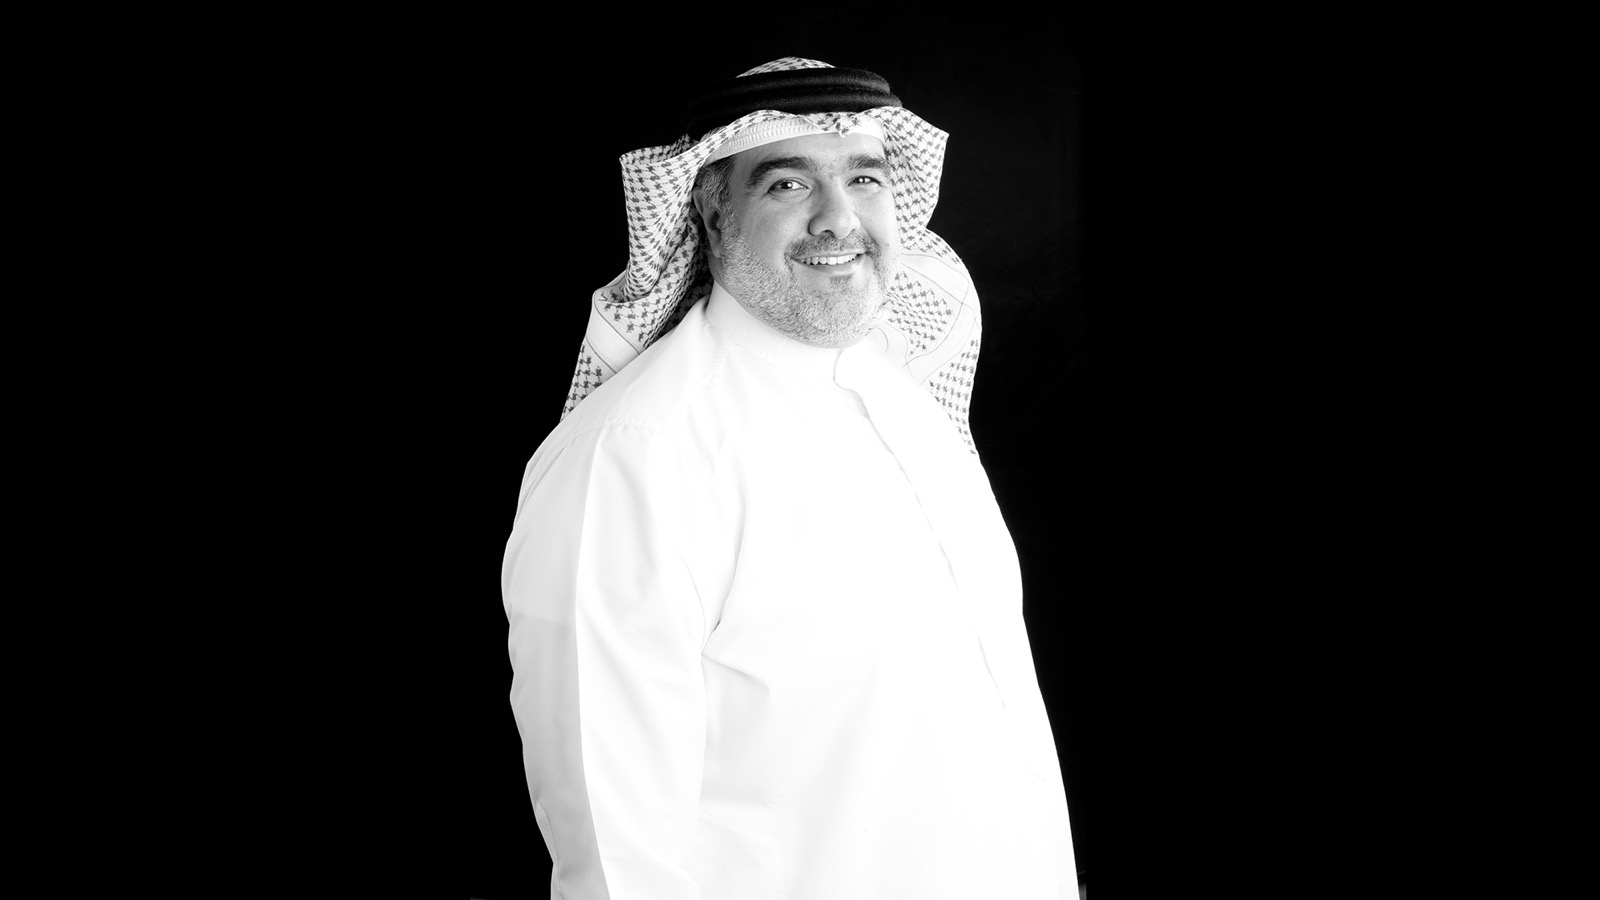 Samer Mohammed Al Ameen